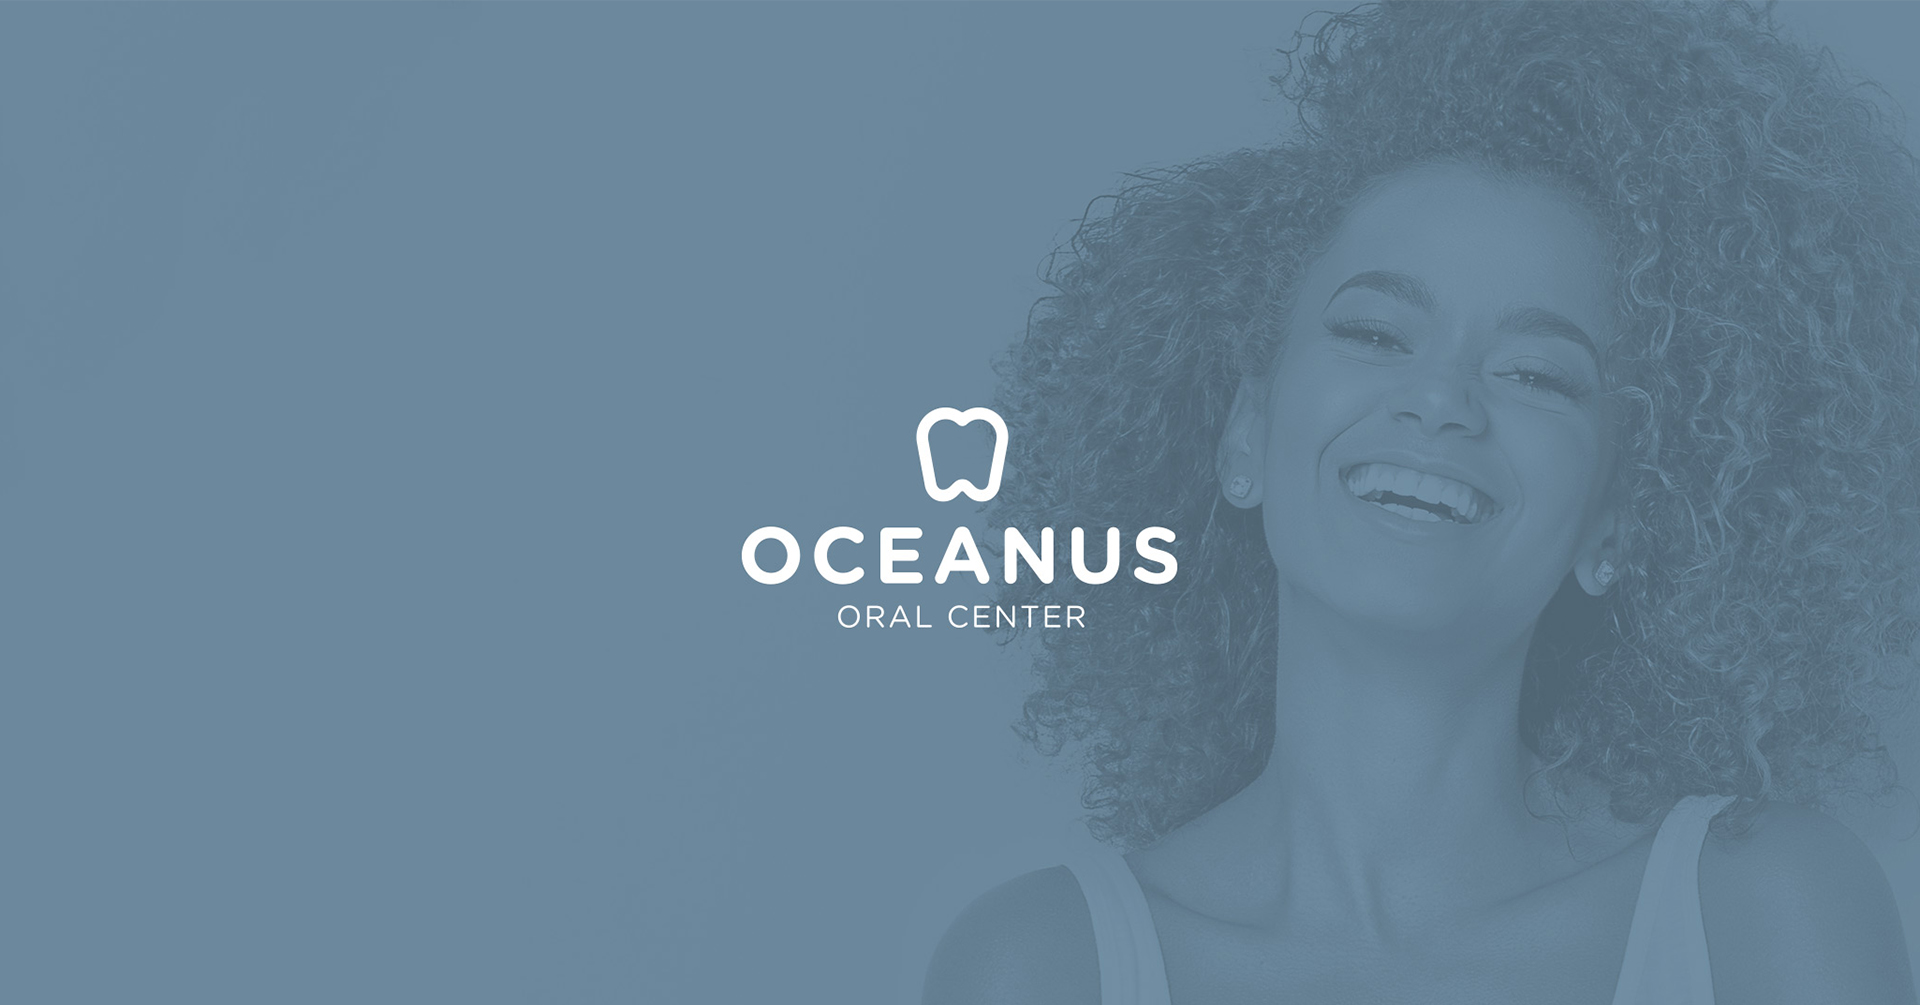 Oceanus Oral Center